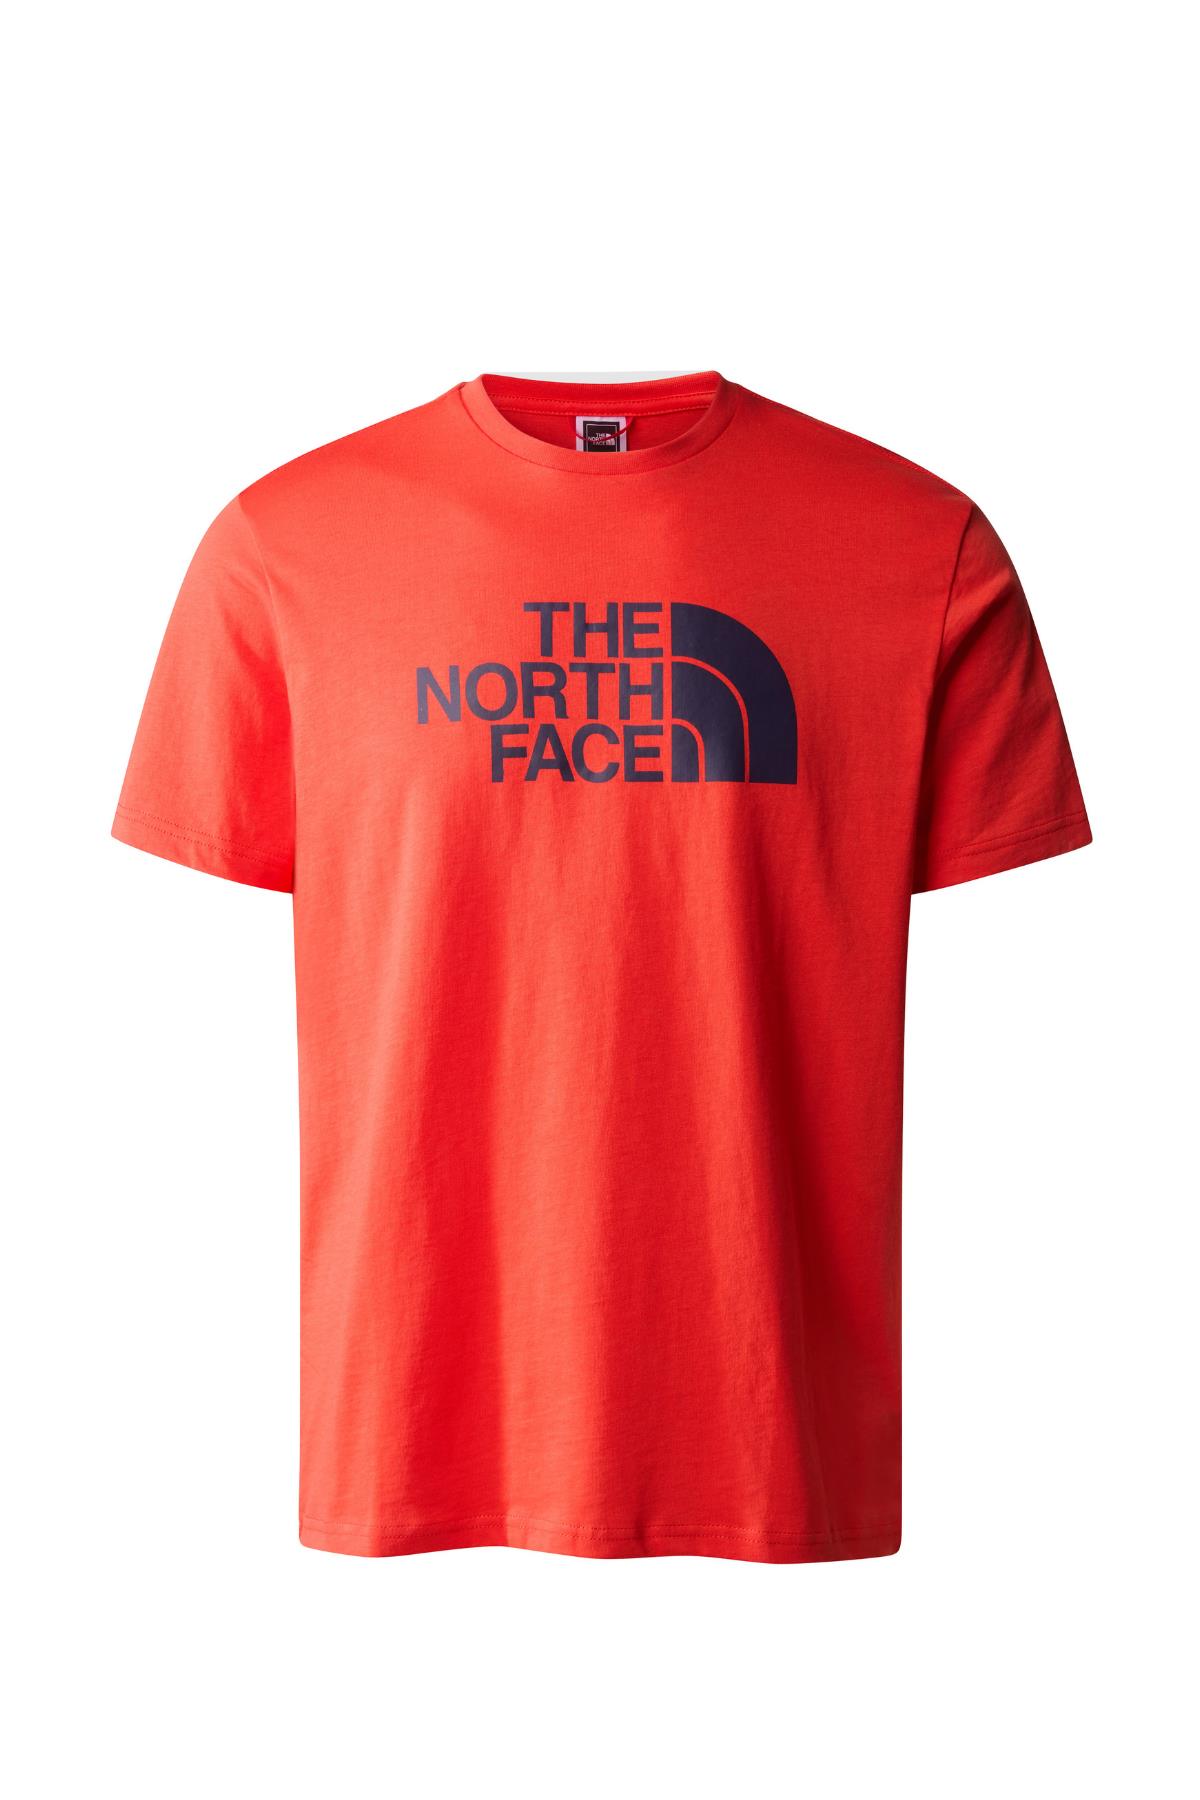 The North FaceM S/S Easy Tee - EU Erkek Tişört Kırmızı